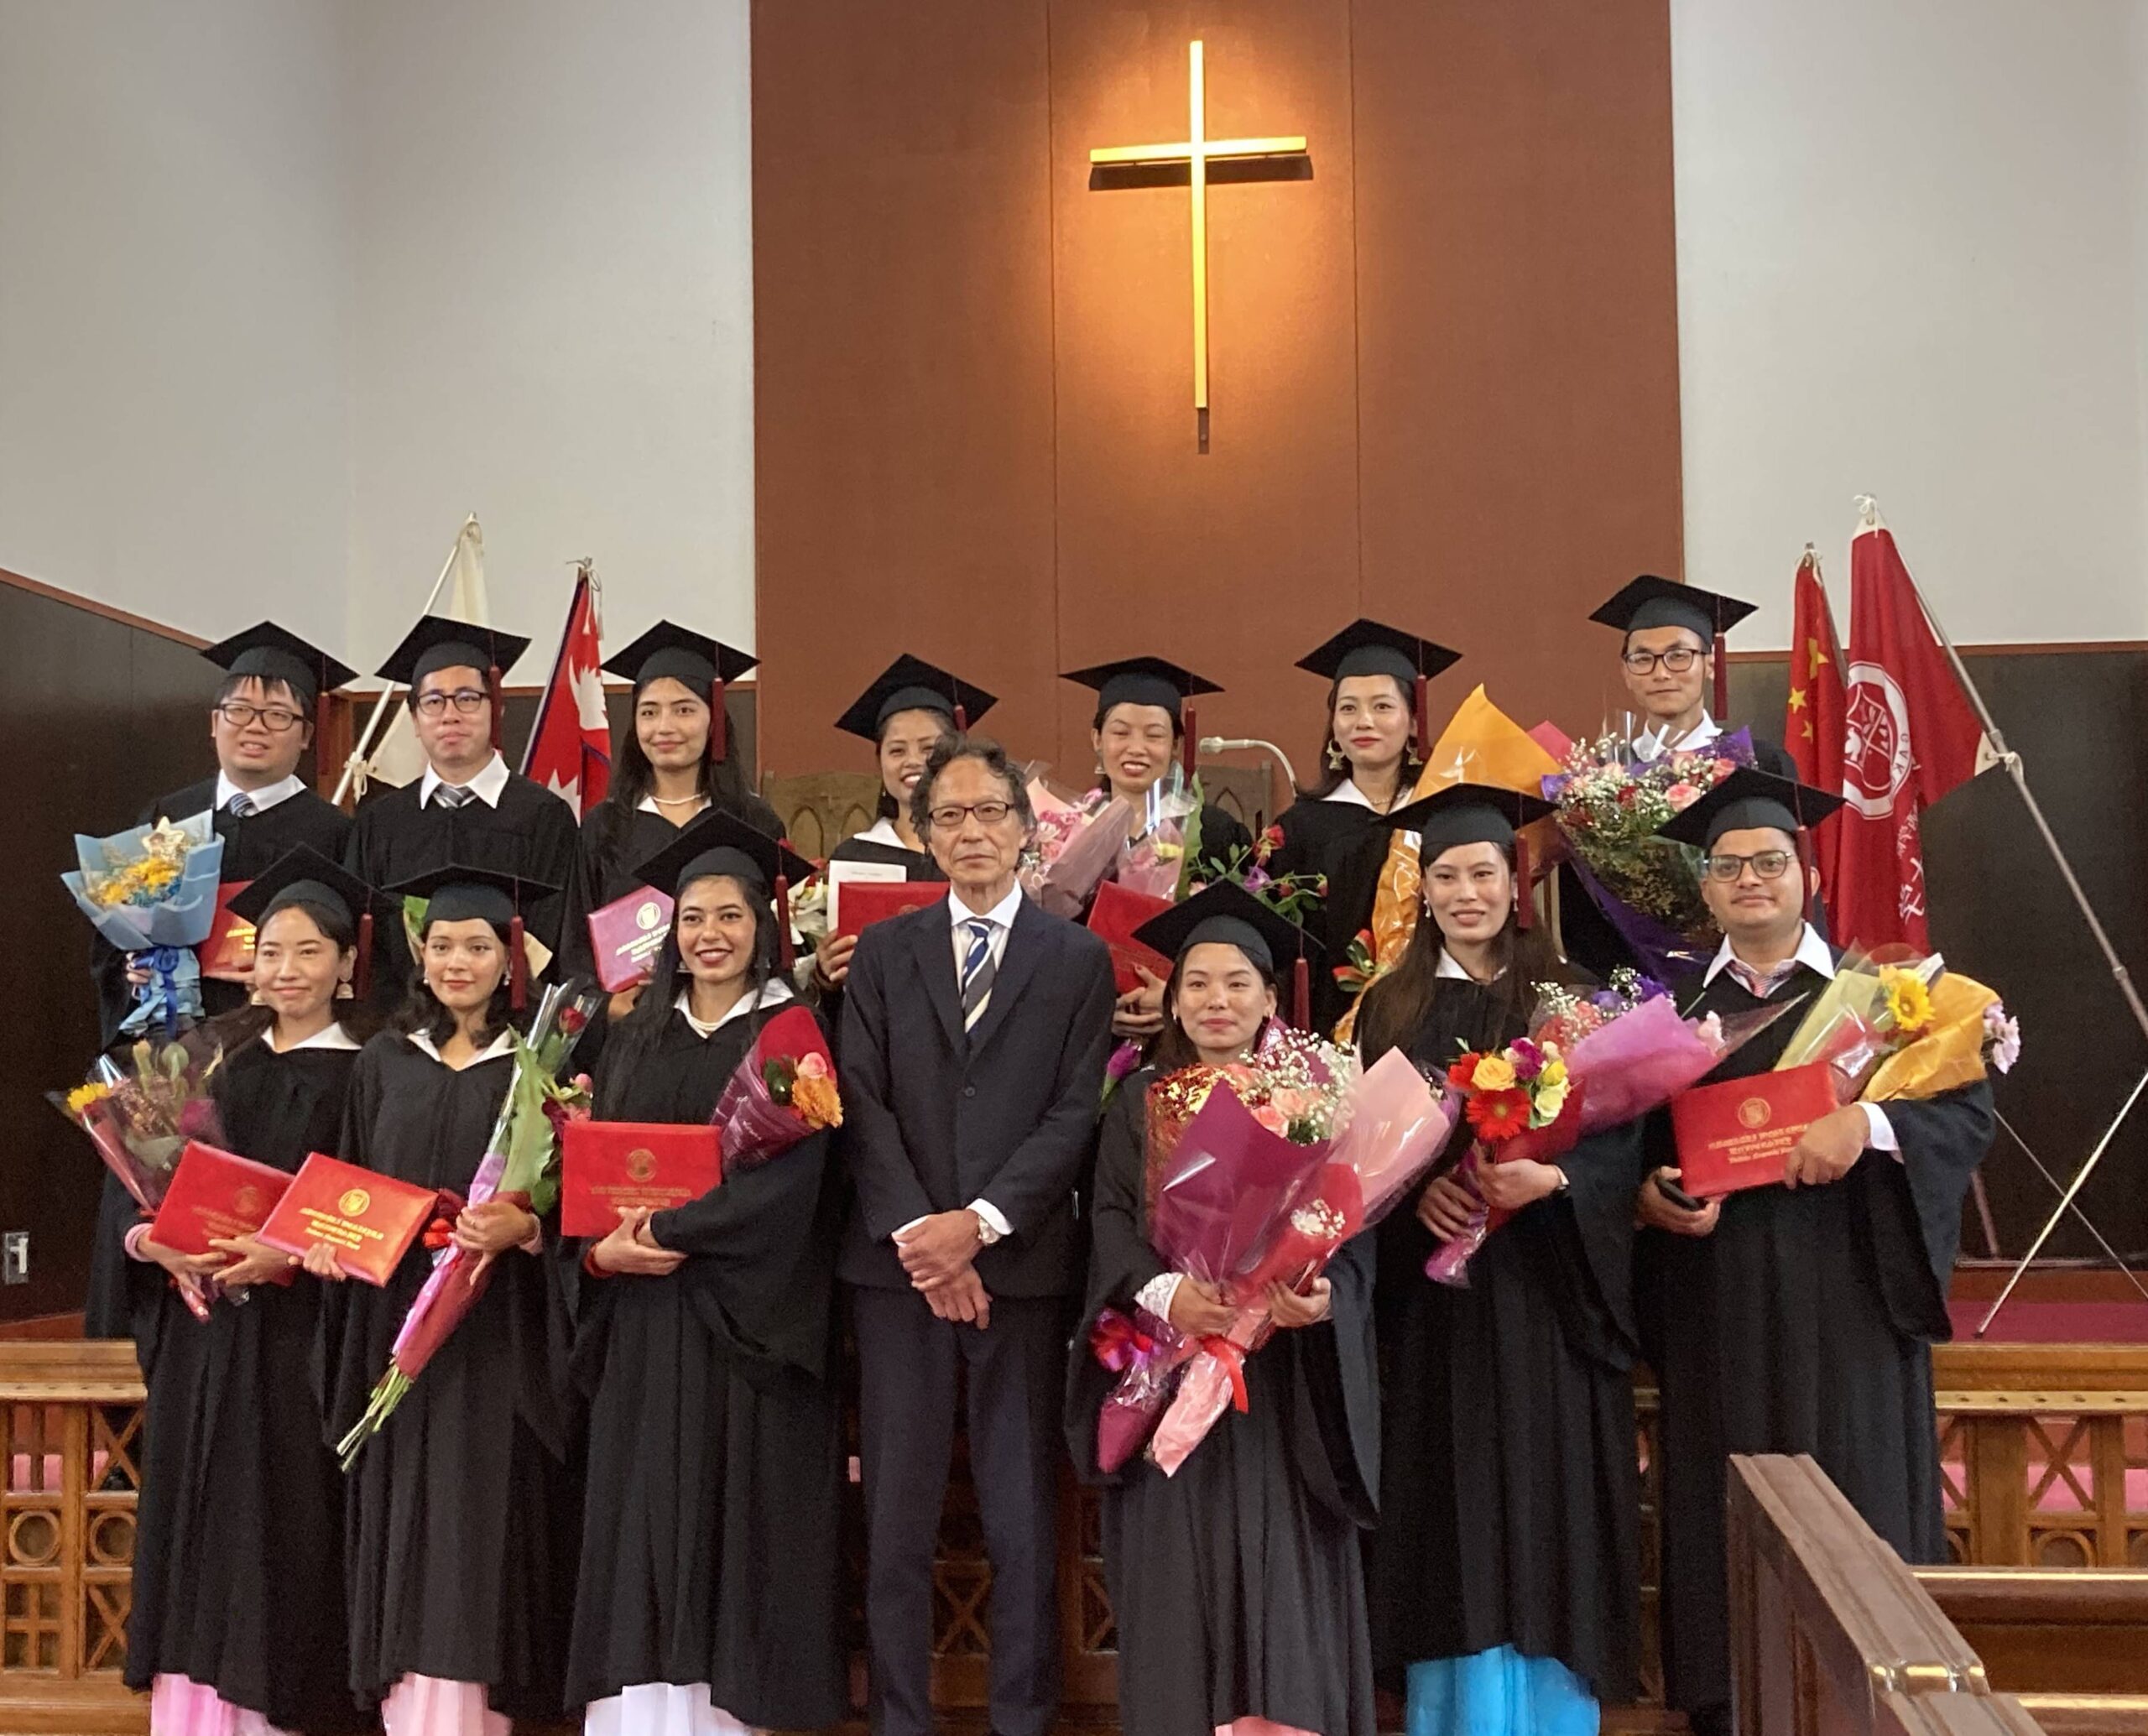 2023.9.1 CGU Graduation Ceremony: Congratulations to our Graduates!